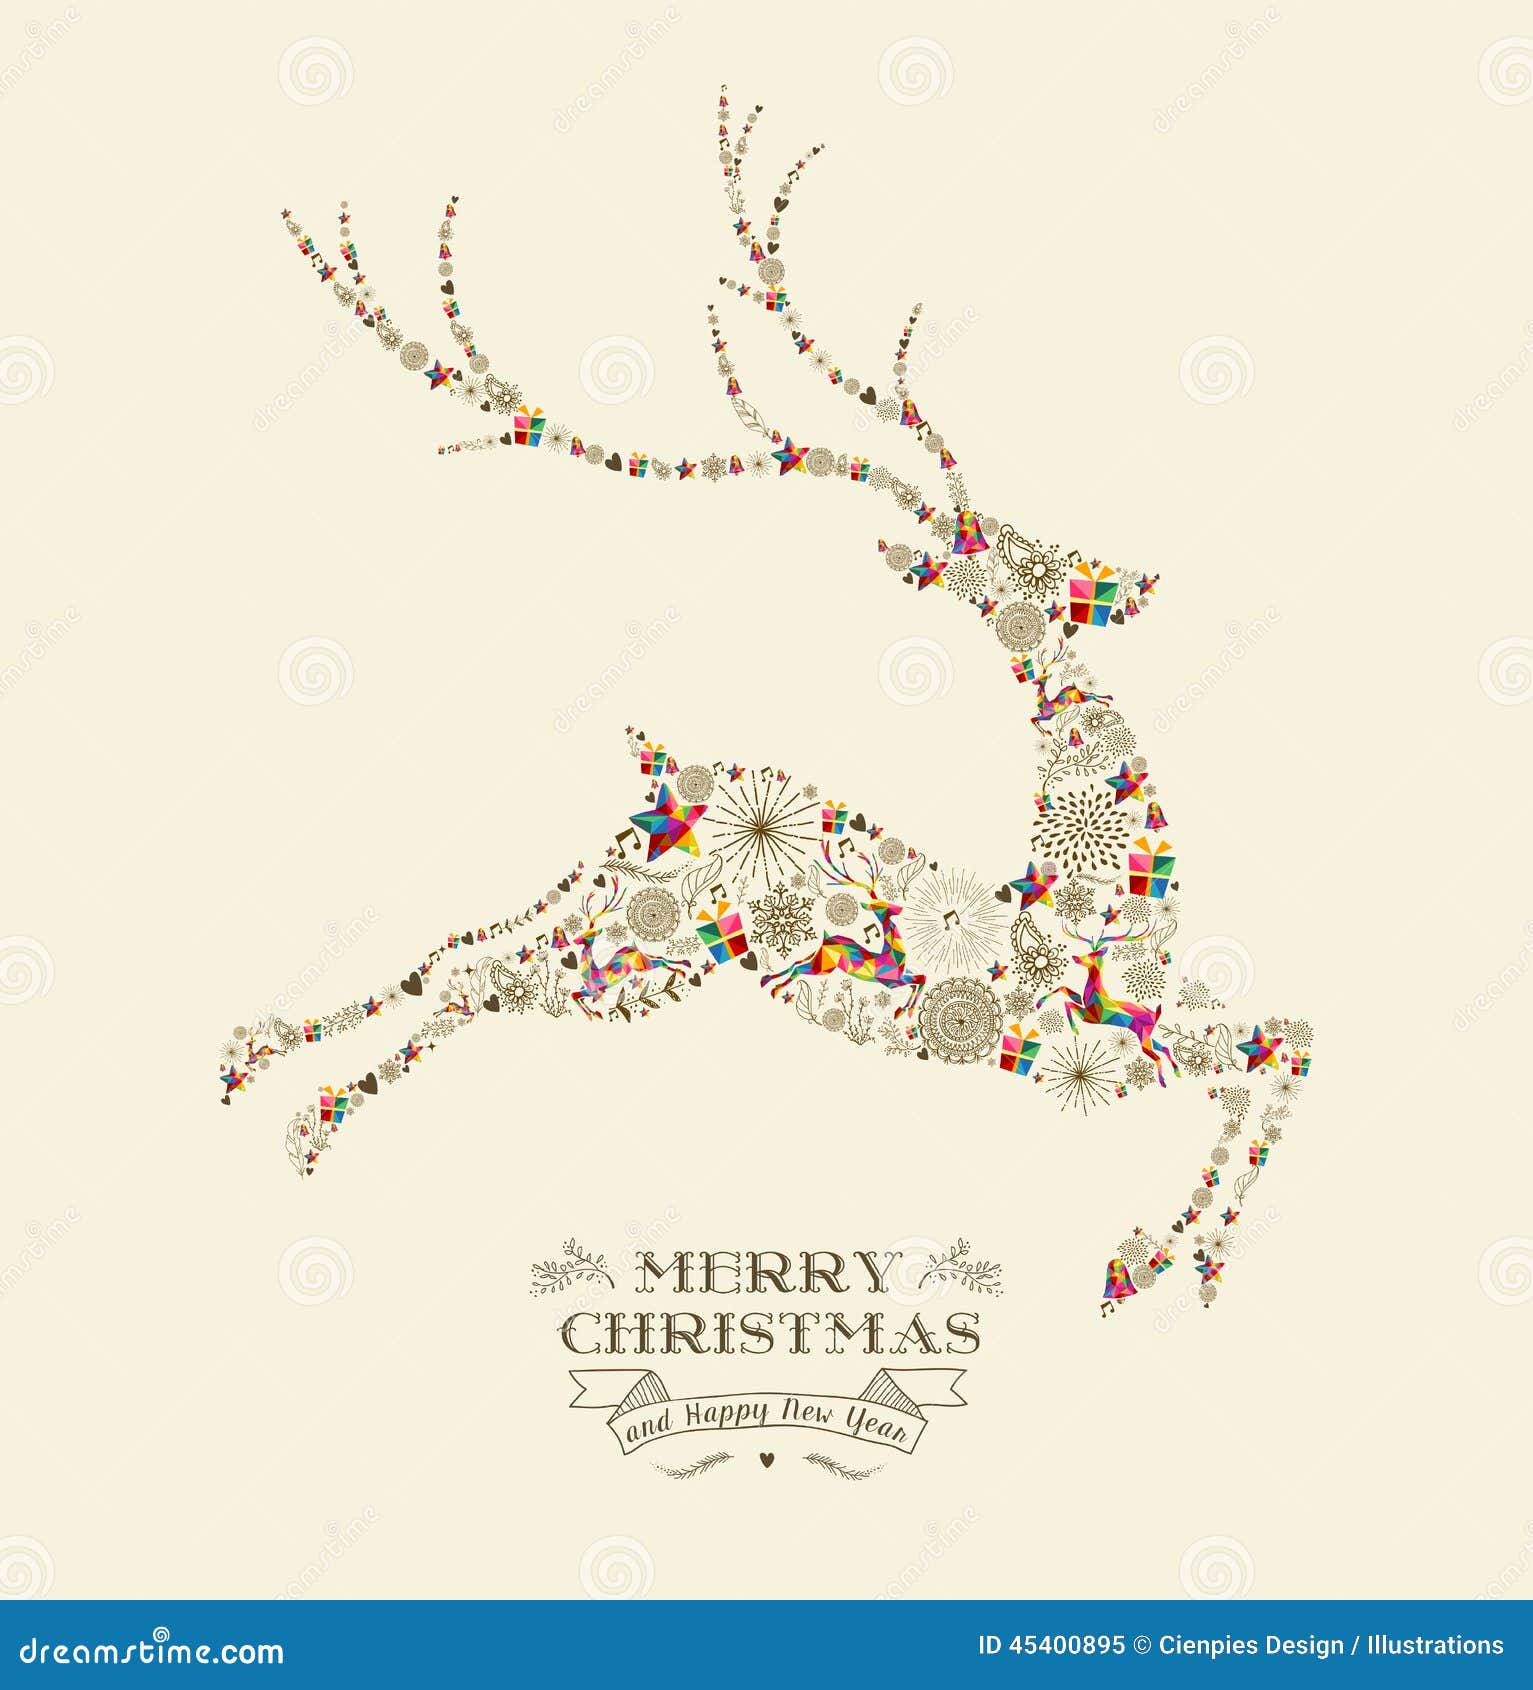 merry christmas vintage reindeer greeting card